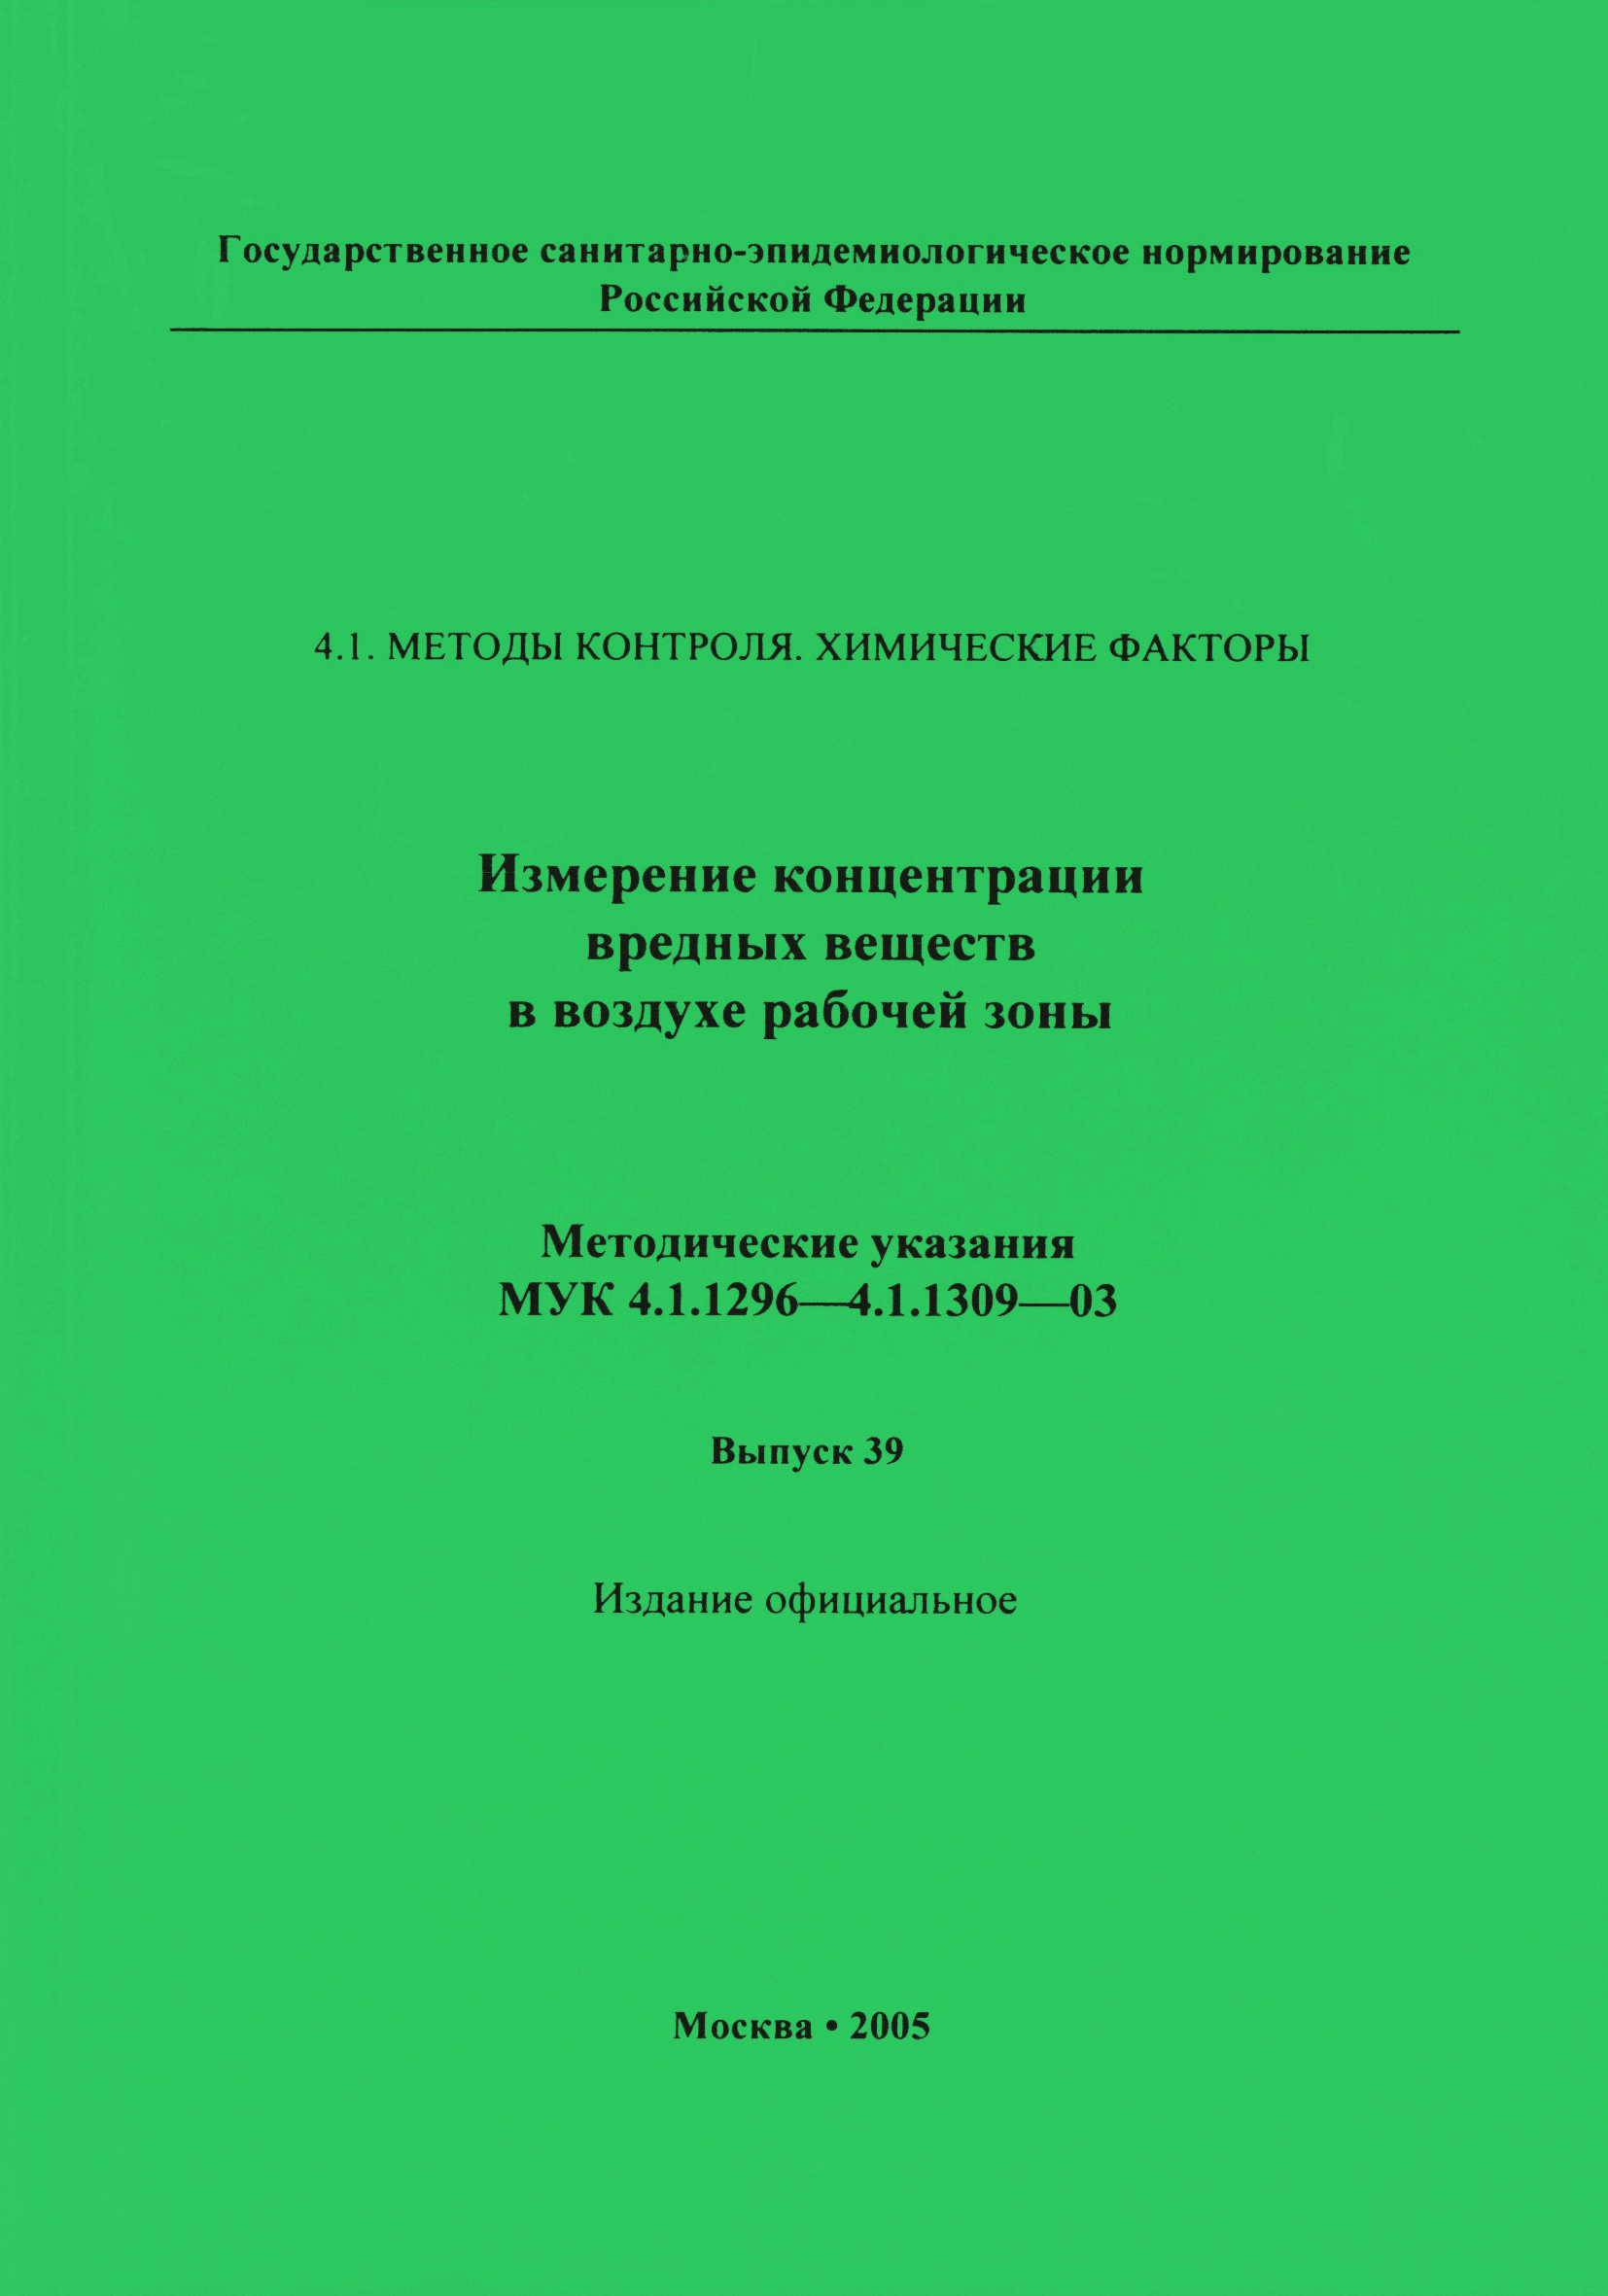 МУК 4.1.1302-03